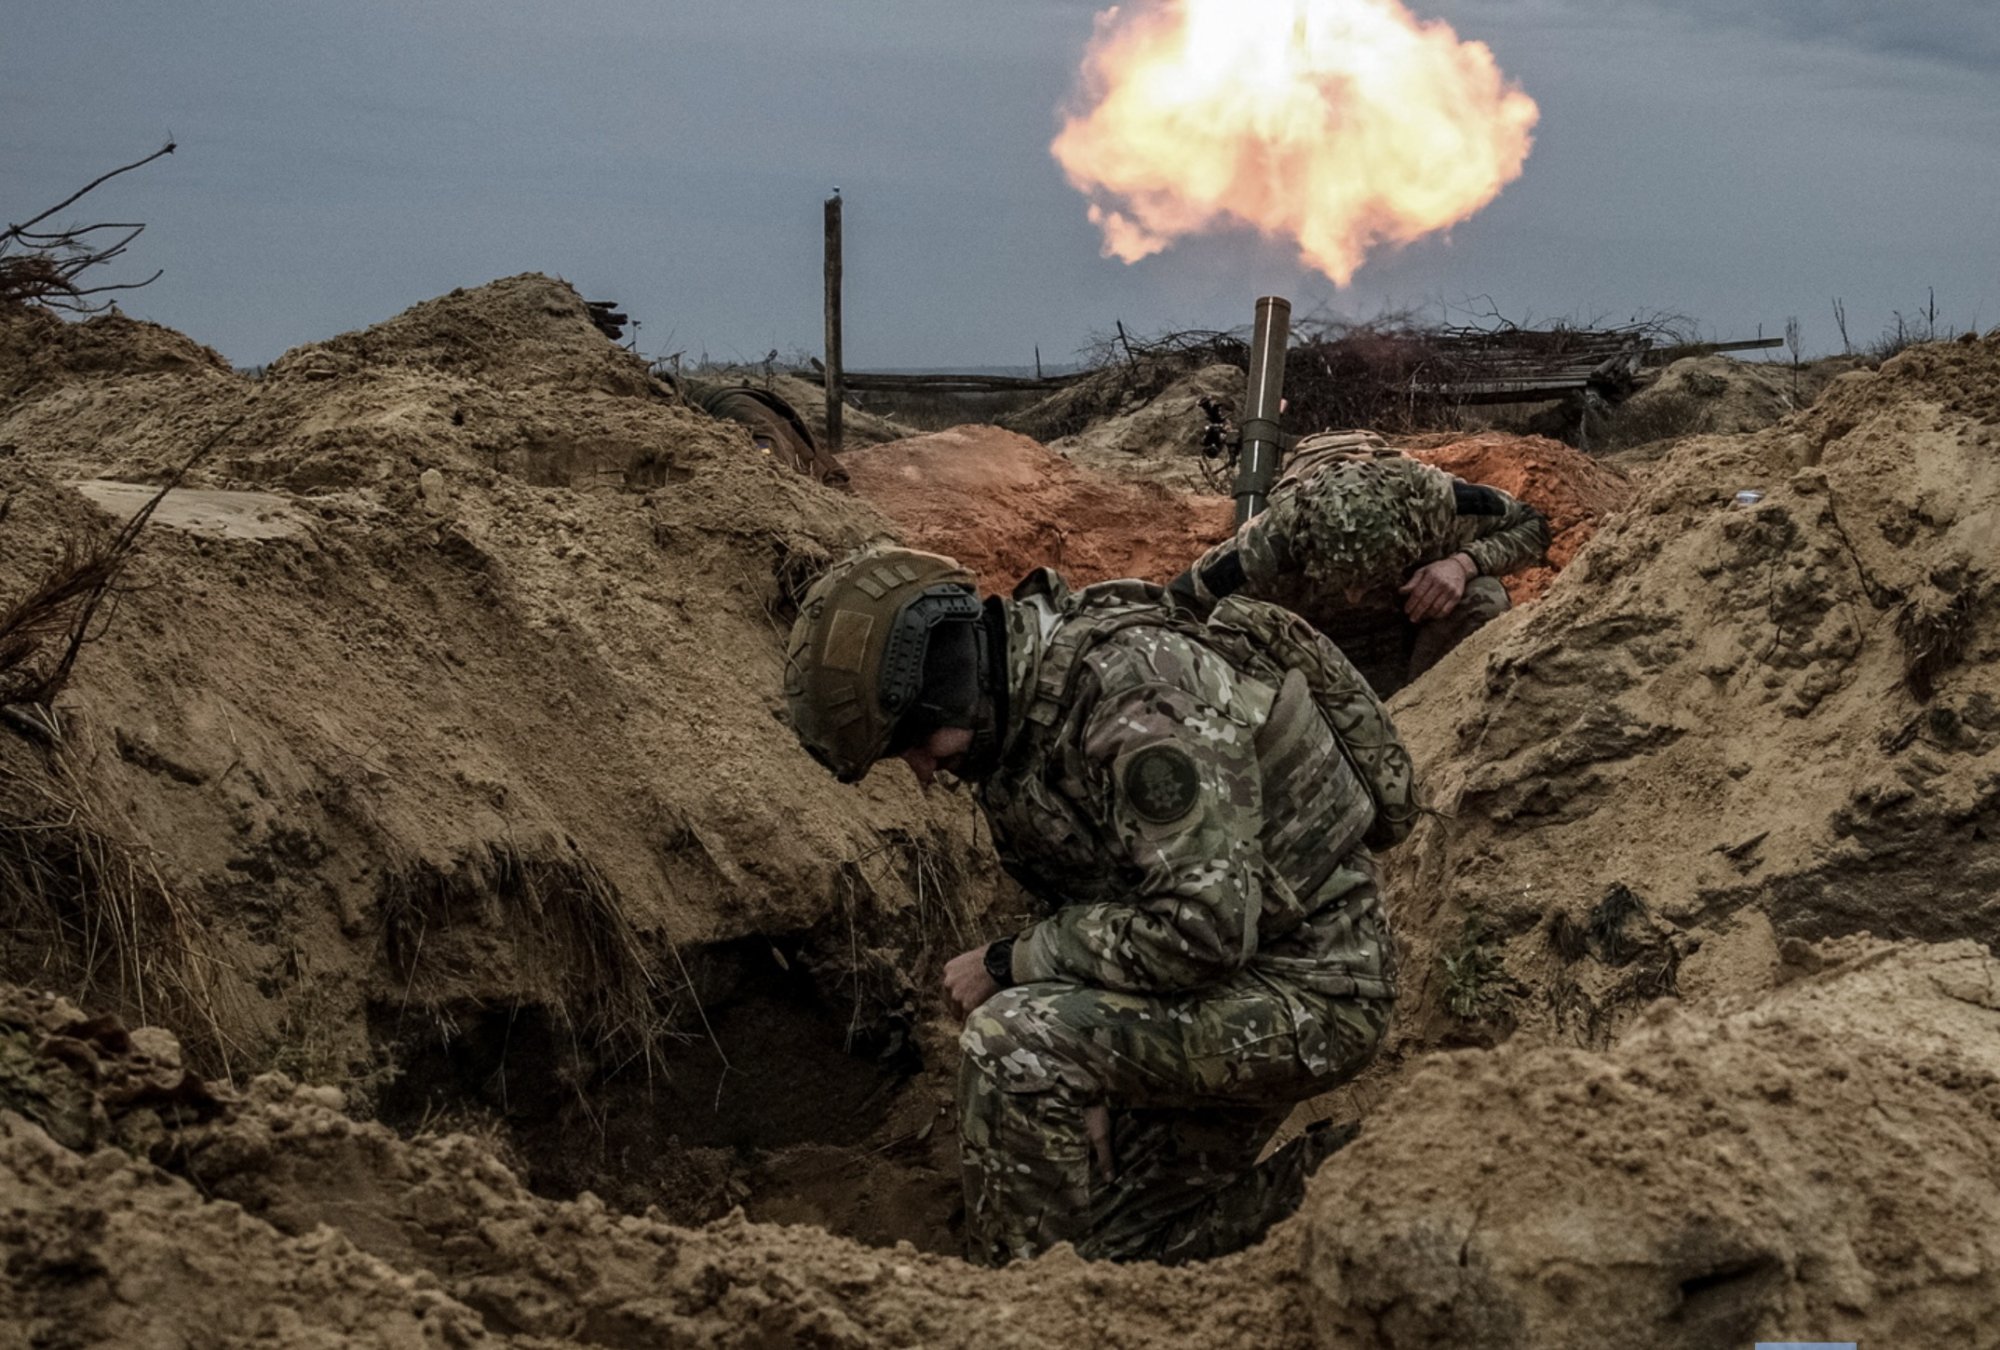 Πόλεμος στην Ουκρανία: Οι ρωσικές δυνάμεις υπερτερούν κατά 10 φορές - «Δώστε μας όπλα» καλεί ο Ζελένσκι